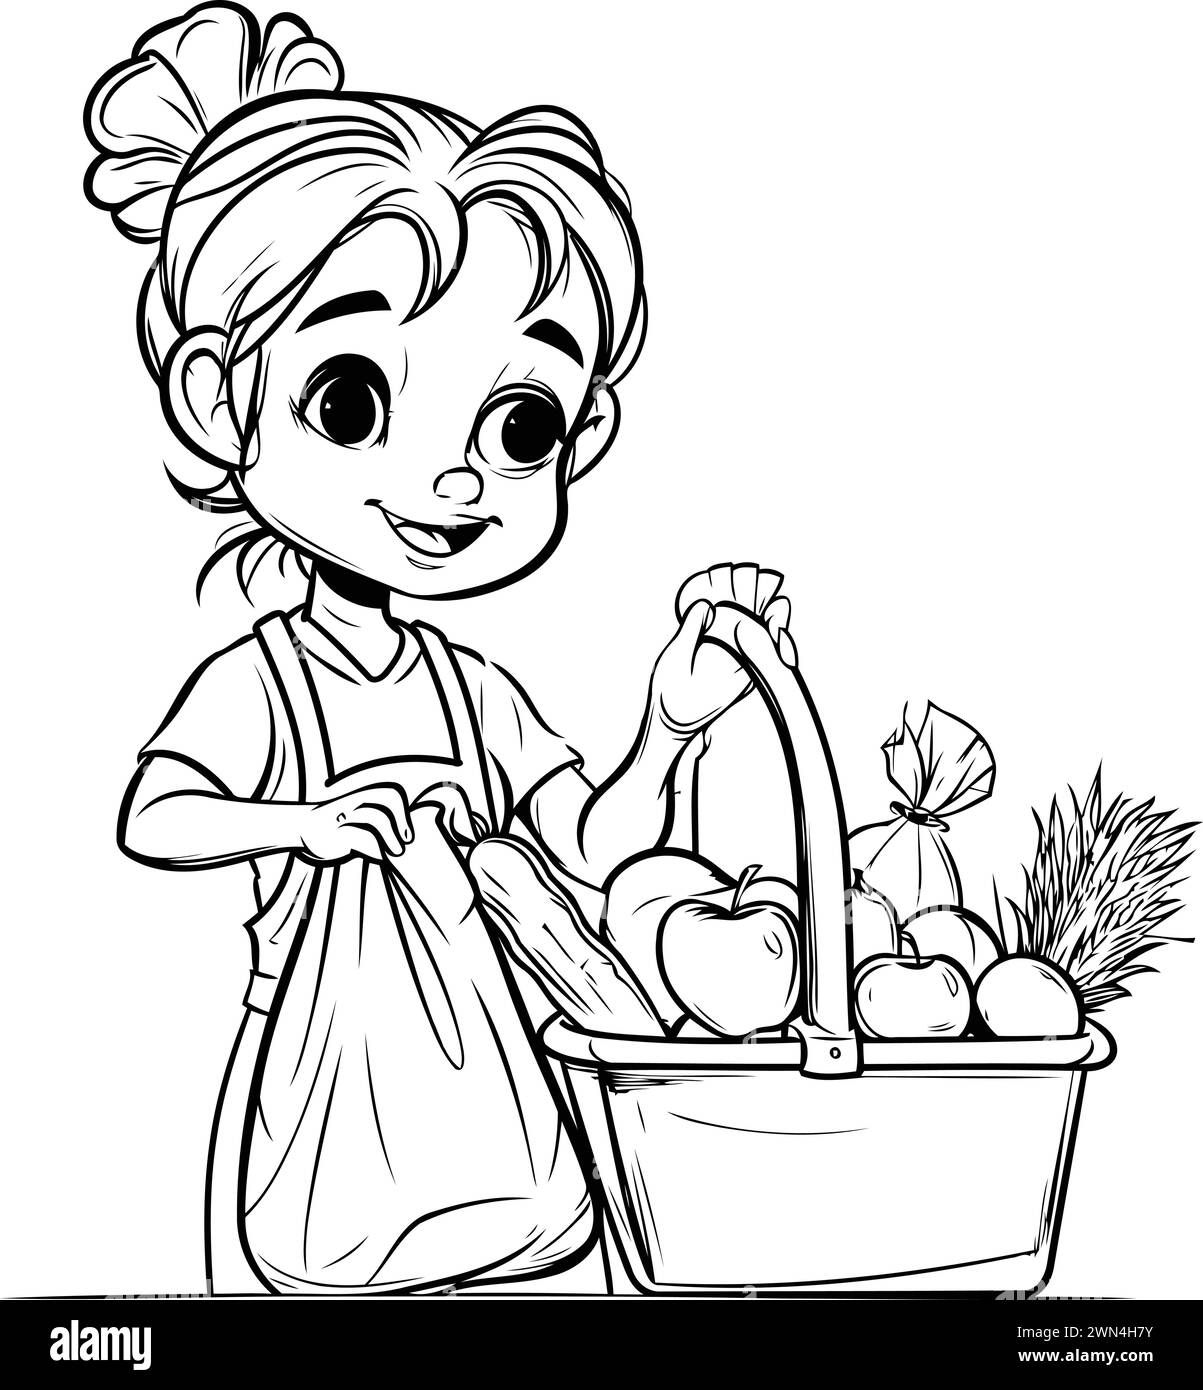 Petite fille mignonne avec panier de fruits et légumes. Illustration vectorielle. Illustration de Vecteur